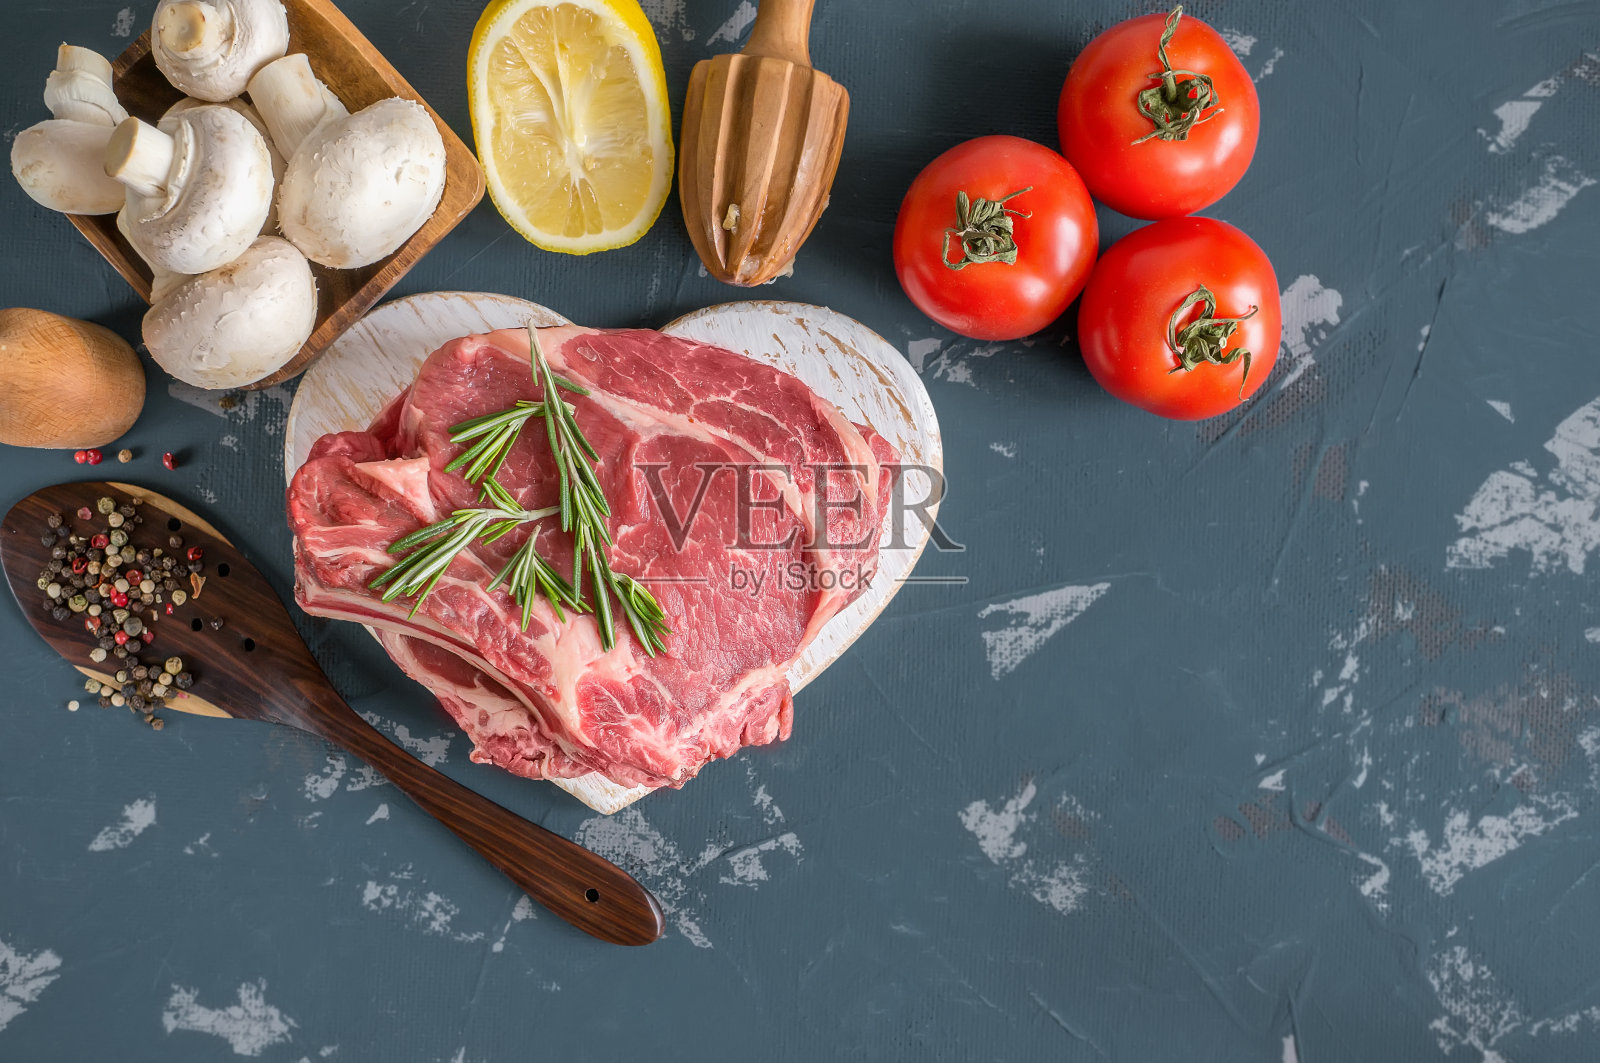 将切好的牛肉放在木砧板上烤，用月桂叶、迷迭香、橄榄油和普罗旺斯香草腌制，以一种乡村风格。照片摄影图片